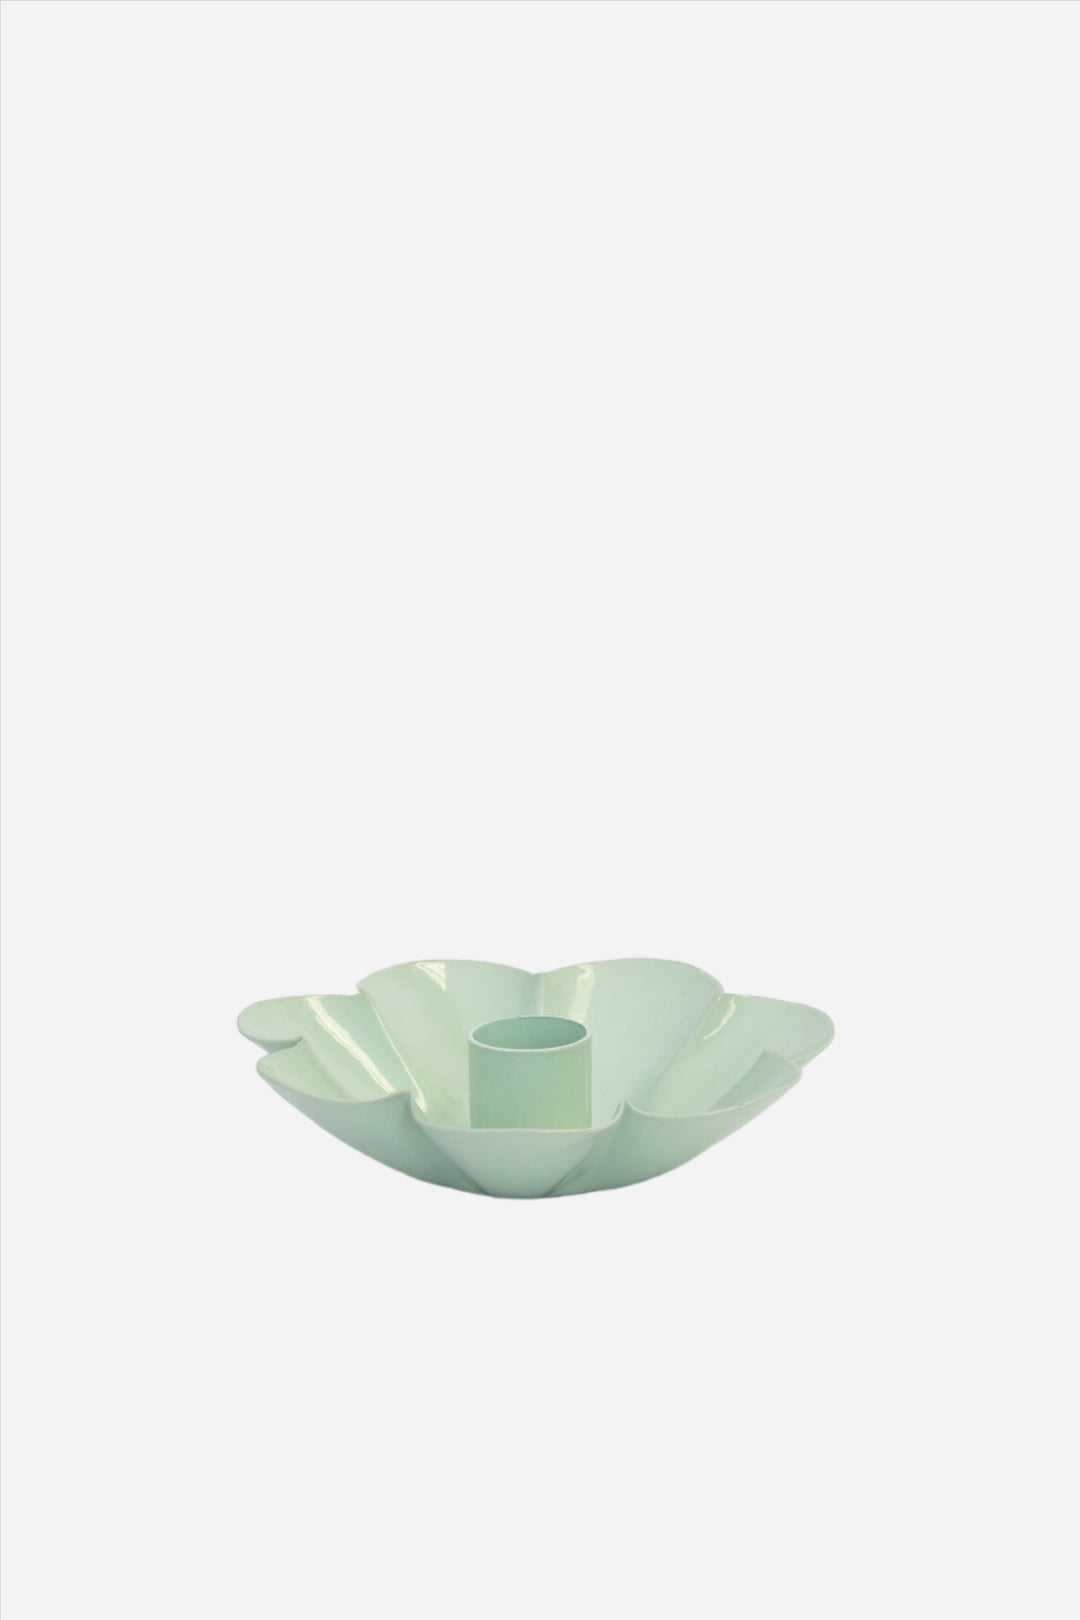 Flower Dinner Candle Holder / Green Tea